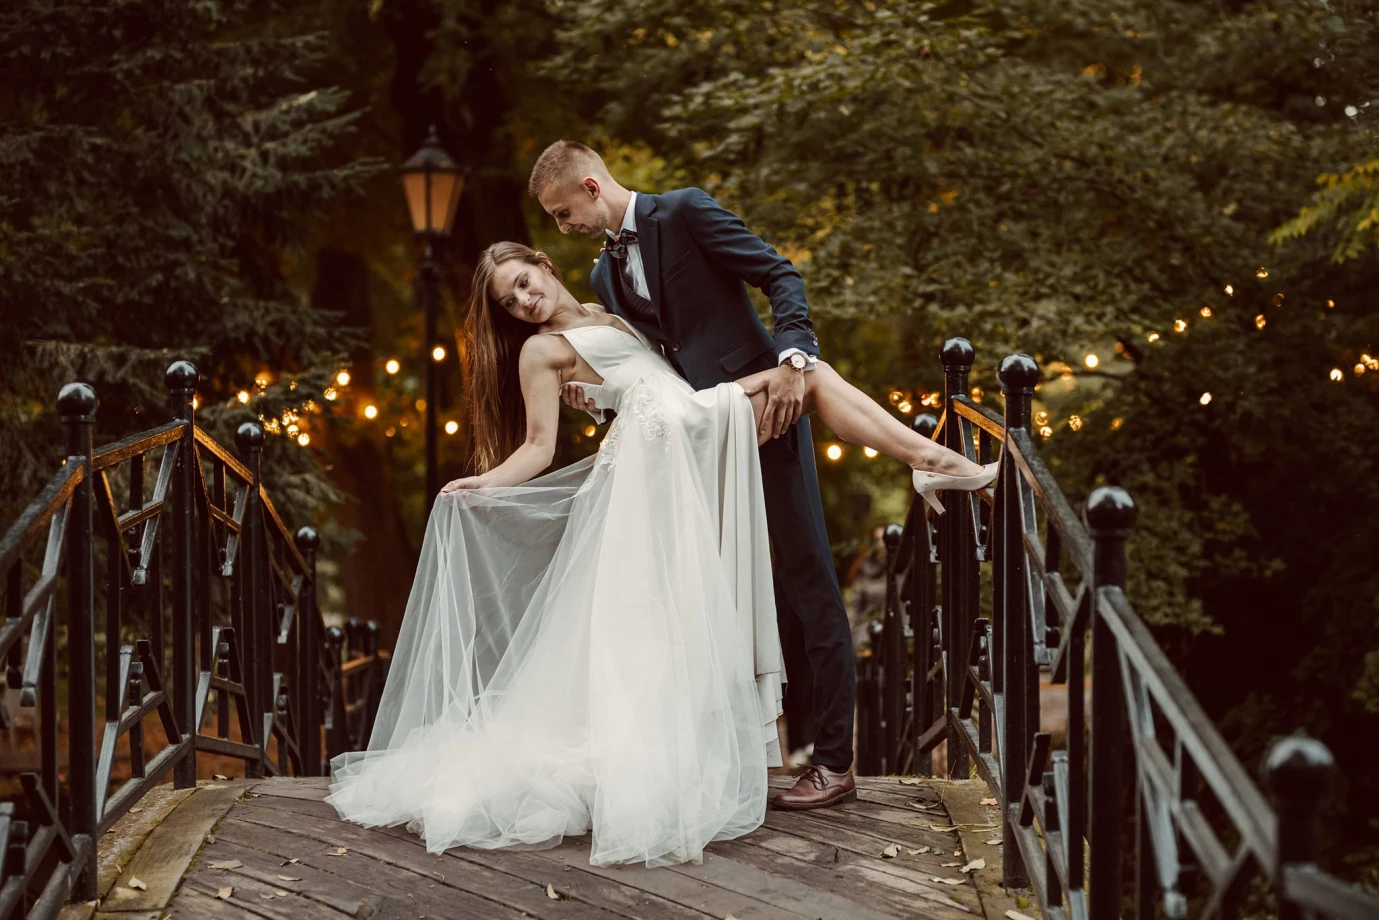 fotograf andrychow fotografia-markowscy portfolio zdjecia slubne inspiracje wesele plener slubny sesja slubna